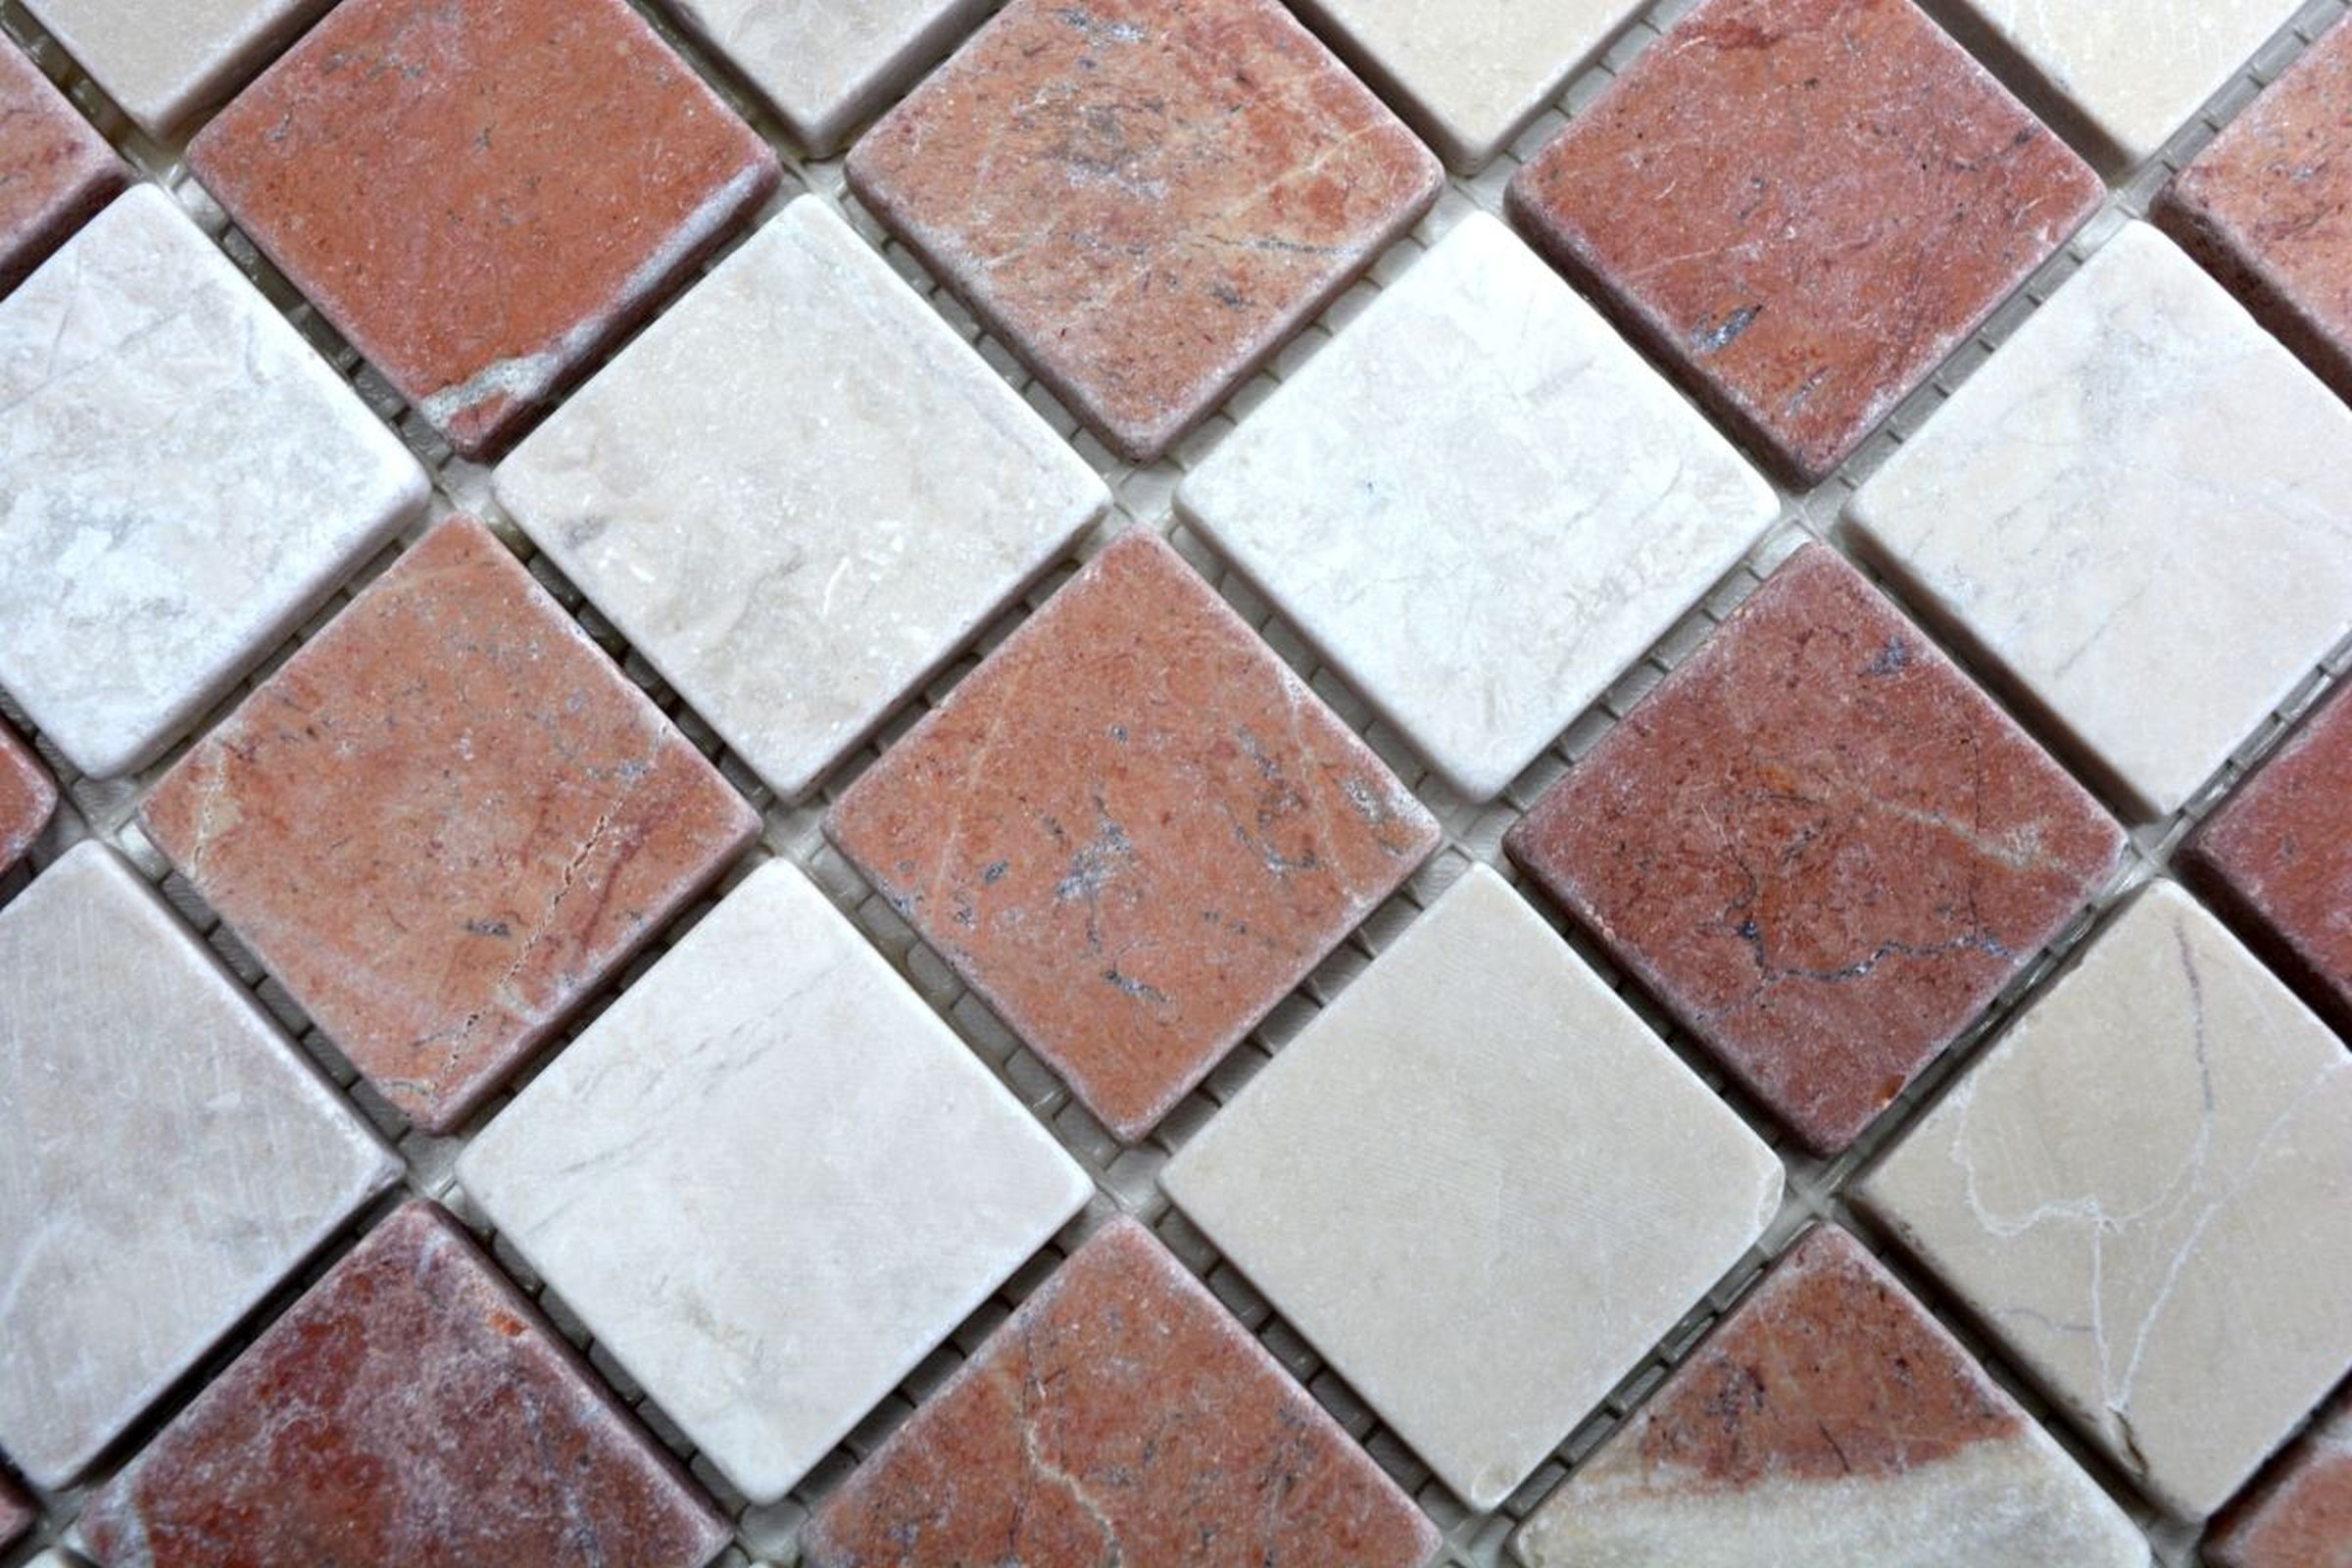 Mosani Mosaikfliesen Marmor Mosaik Bad Verona beige rot Naturstein Fliese Küche Rosso